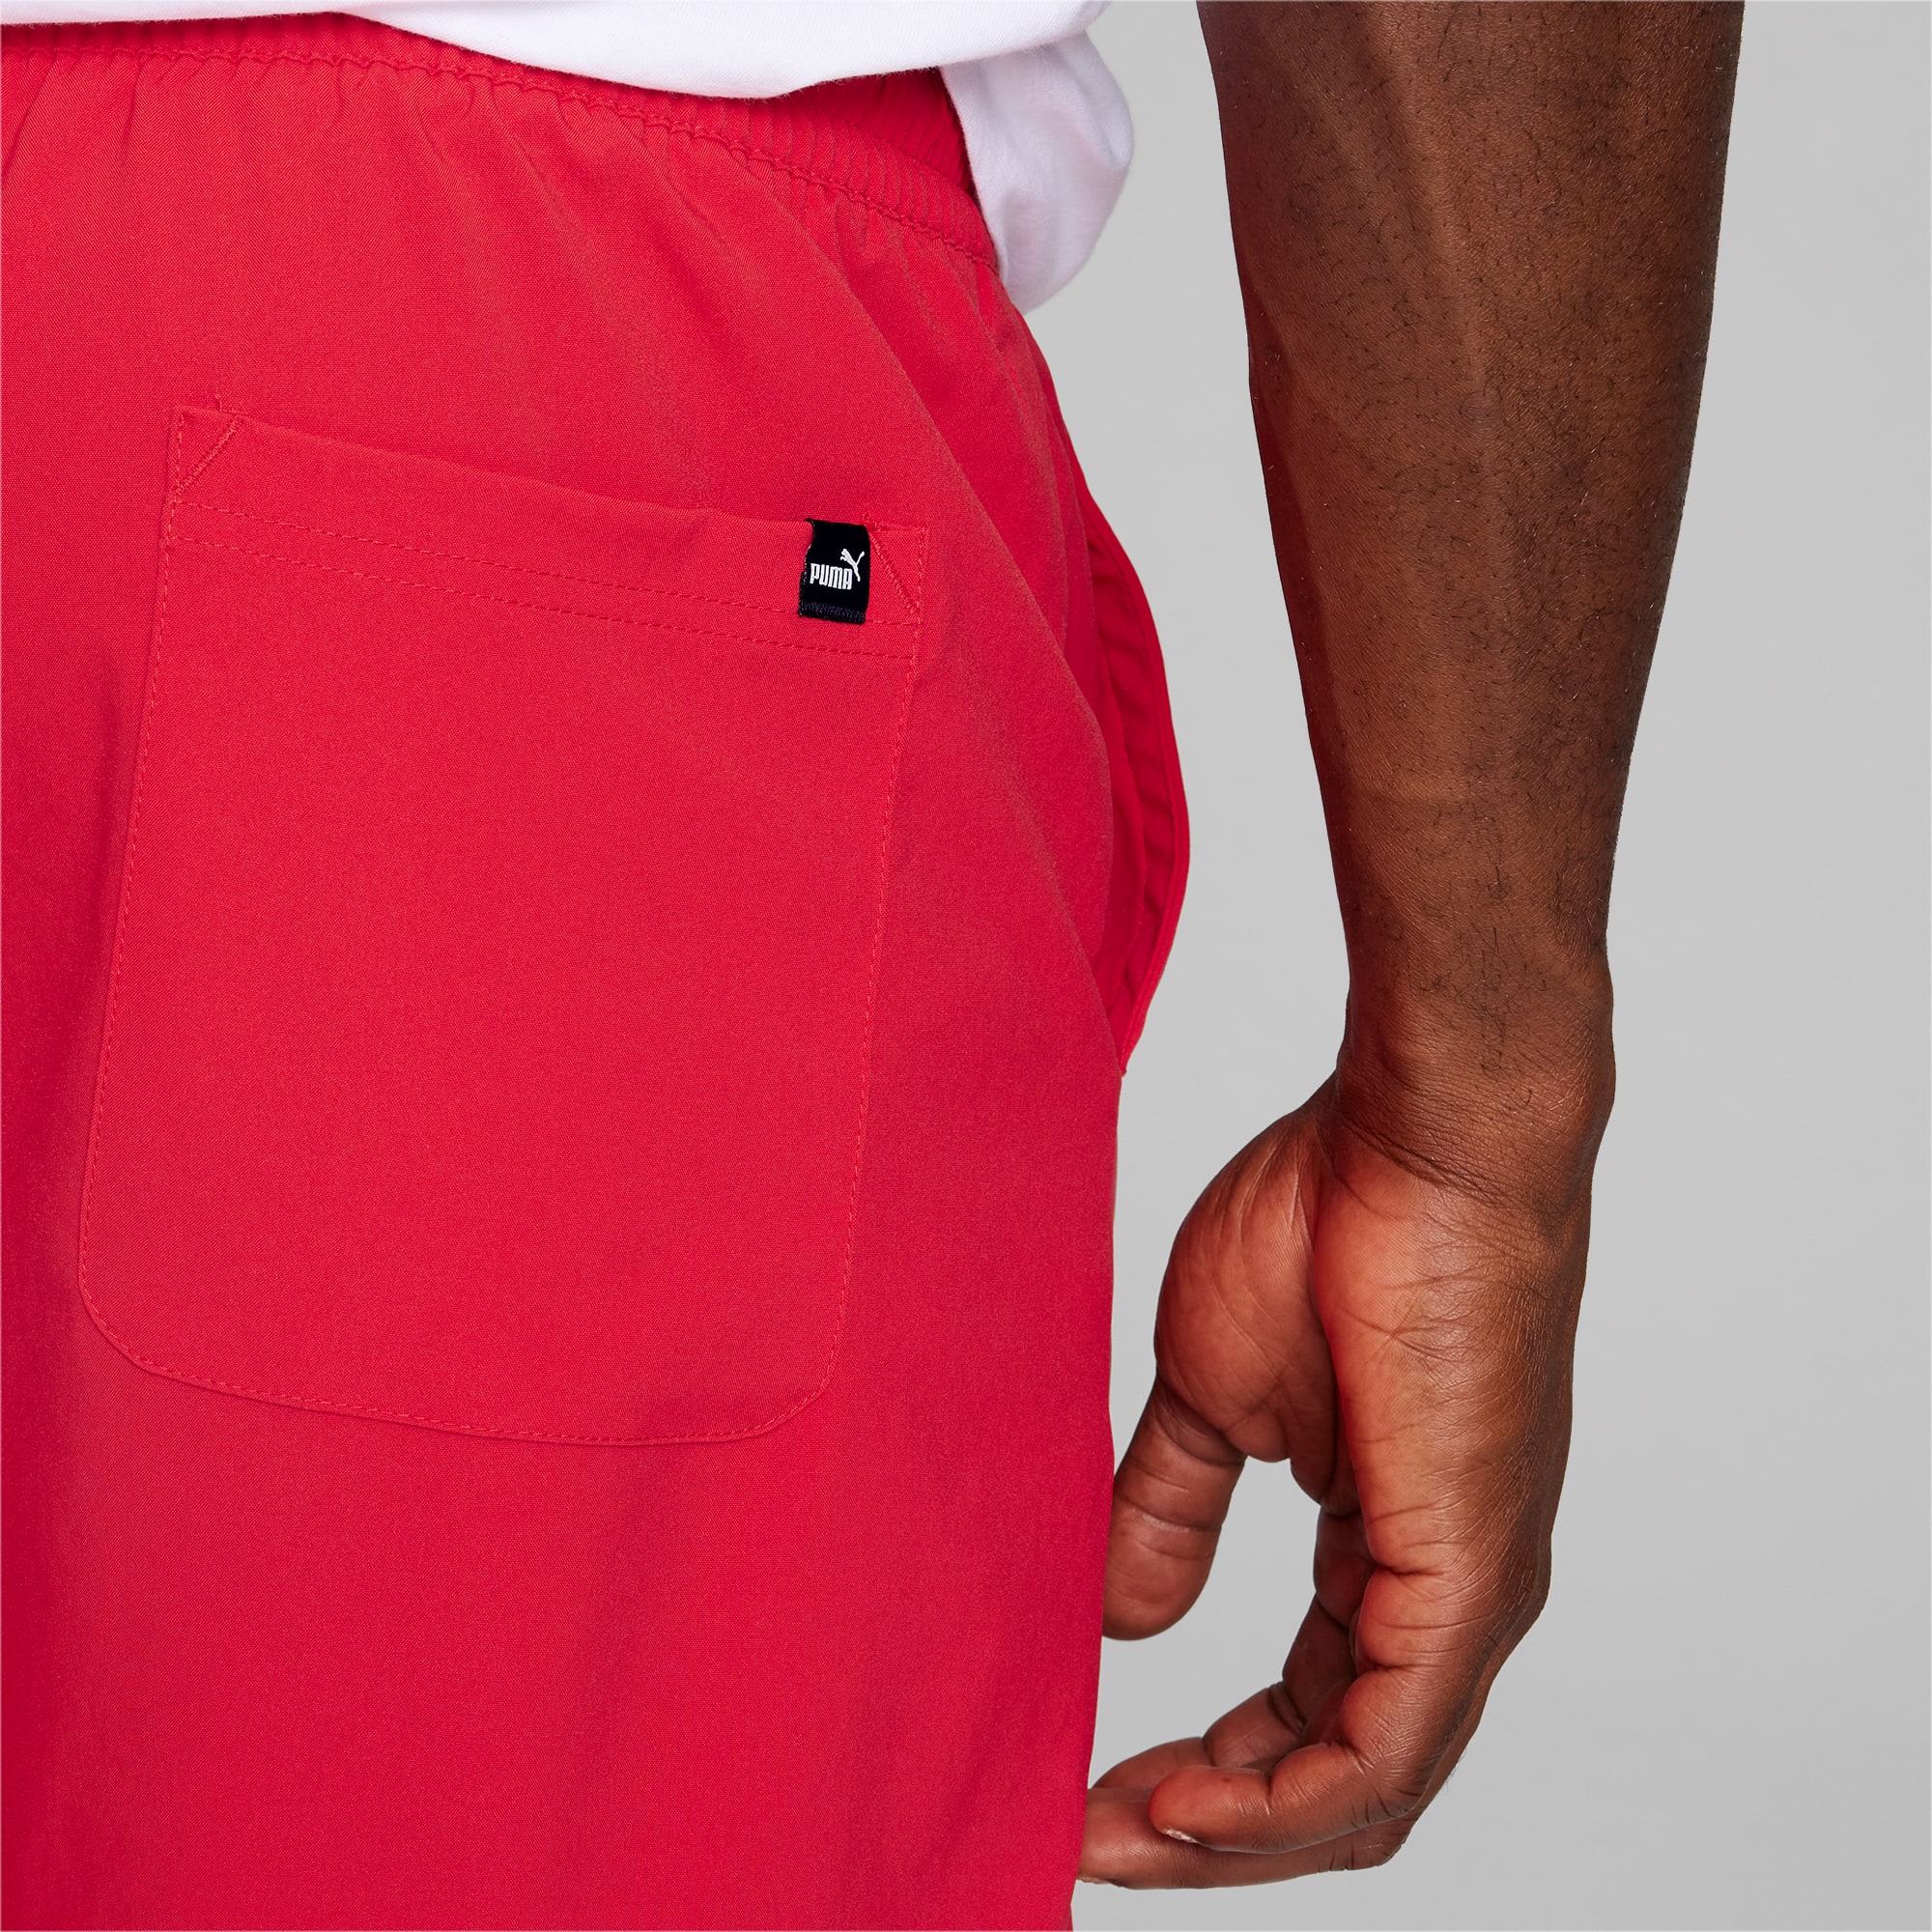 Woven | PUMA Essentials Shorts Men\'s